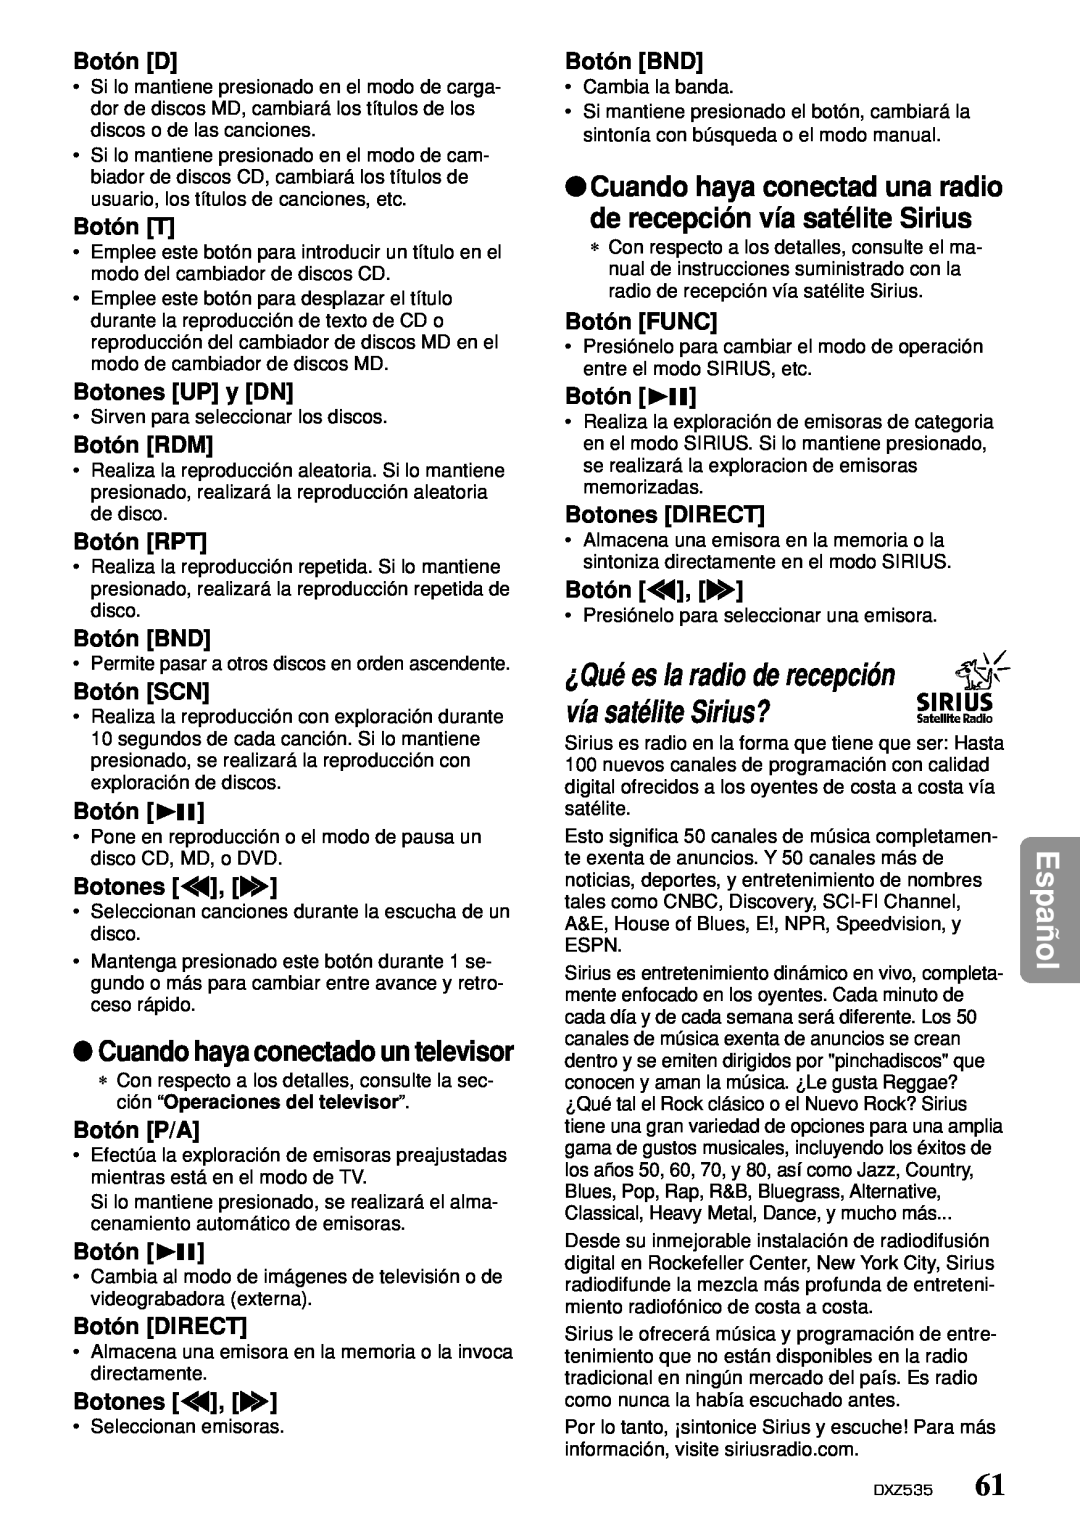 Clarion DXZ535 owner manual Español, Cuando haya conectado un televisor 